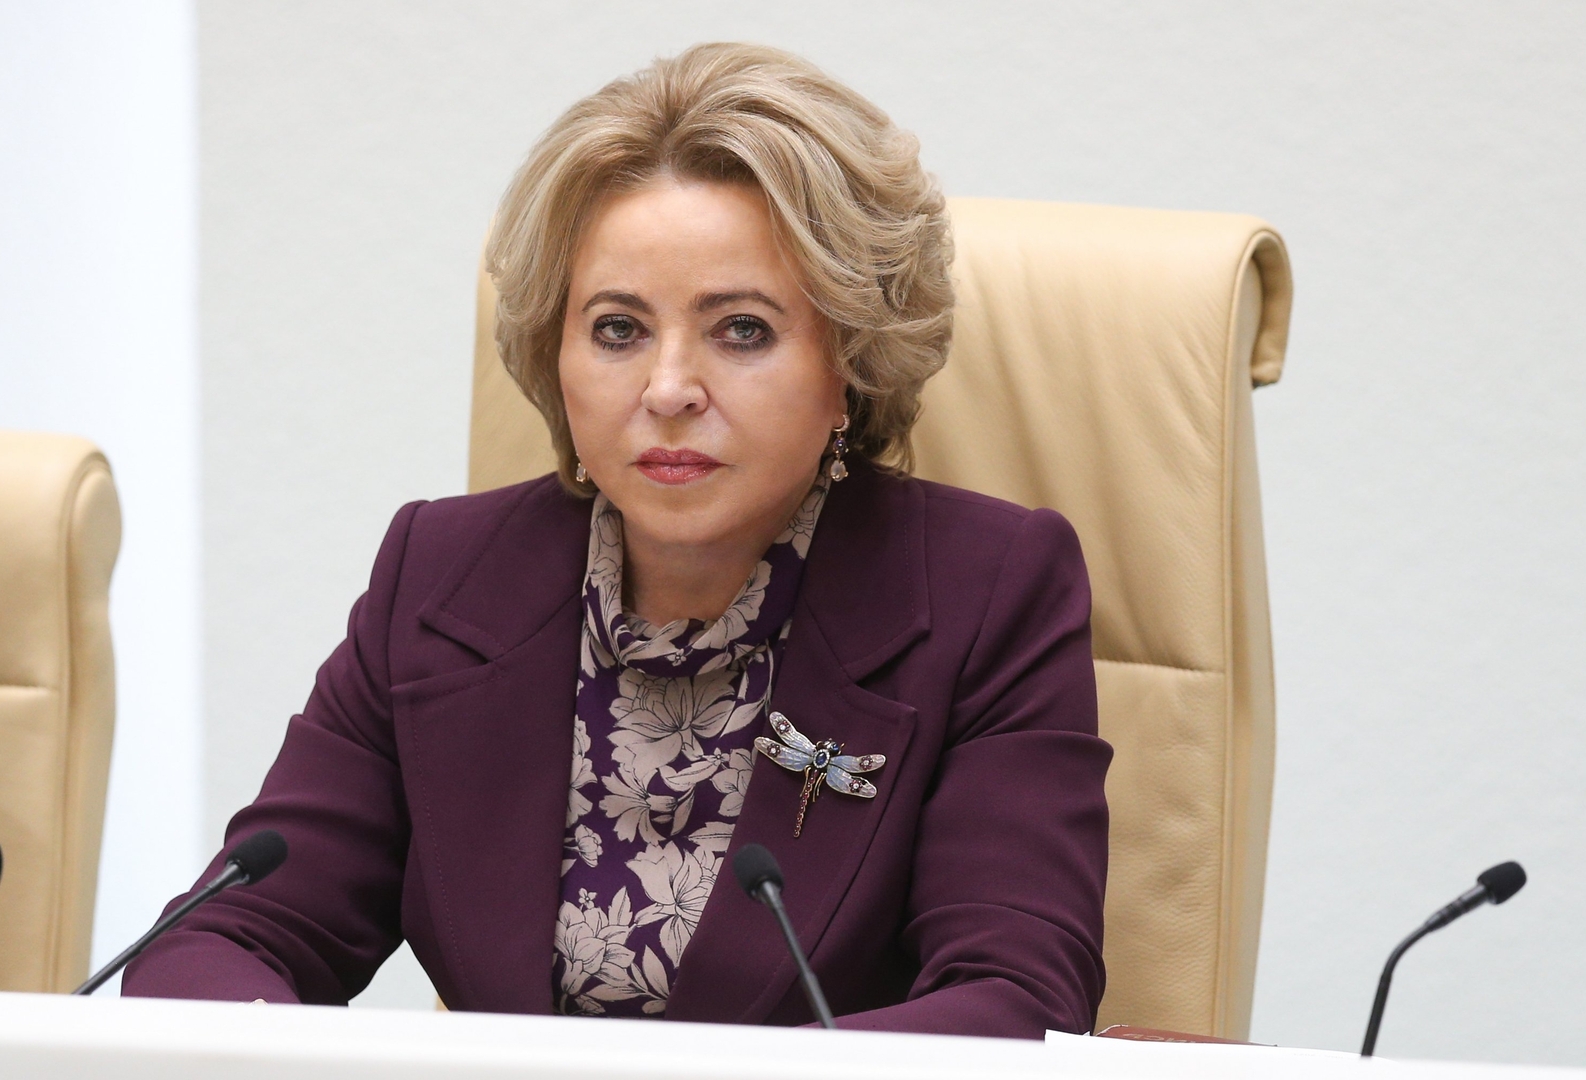 رئيسة مجلس الاتحاد الروسي فالينتينا ماتفيينكو